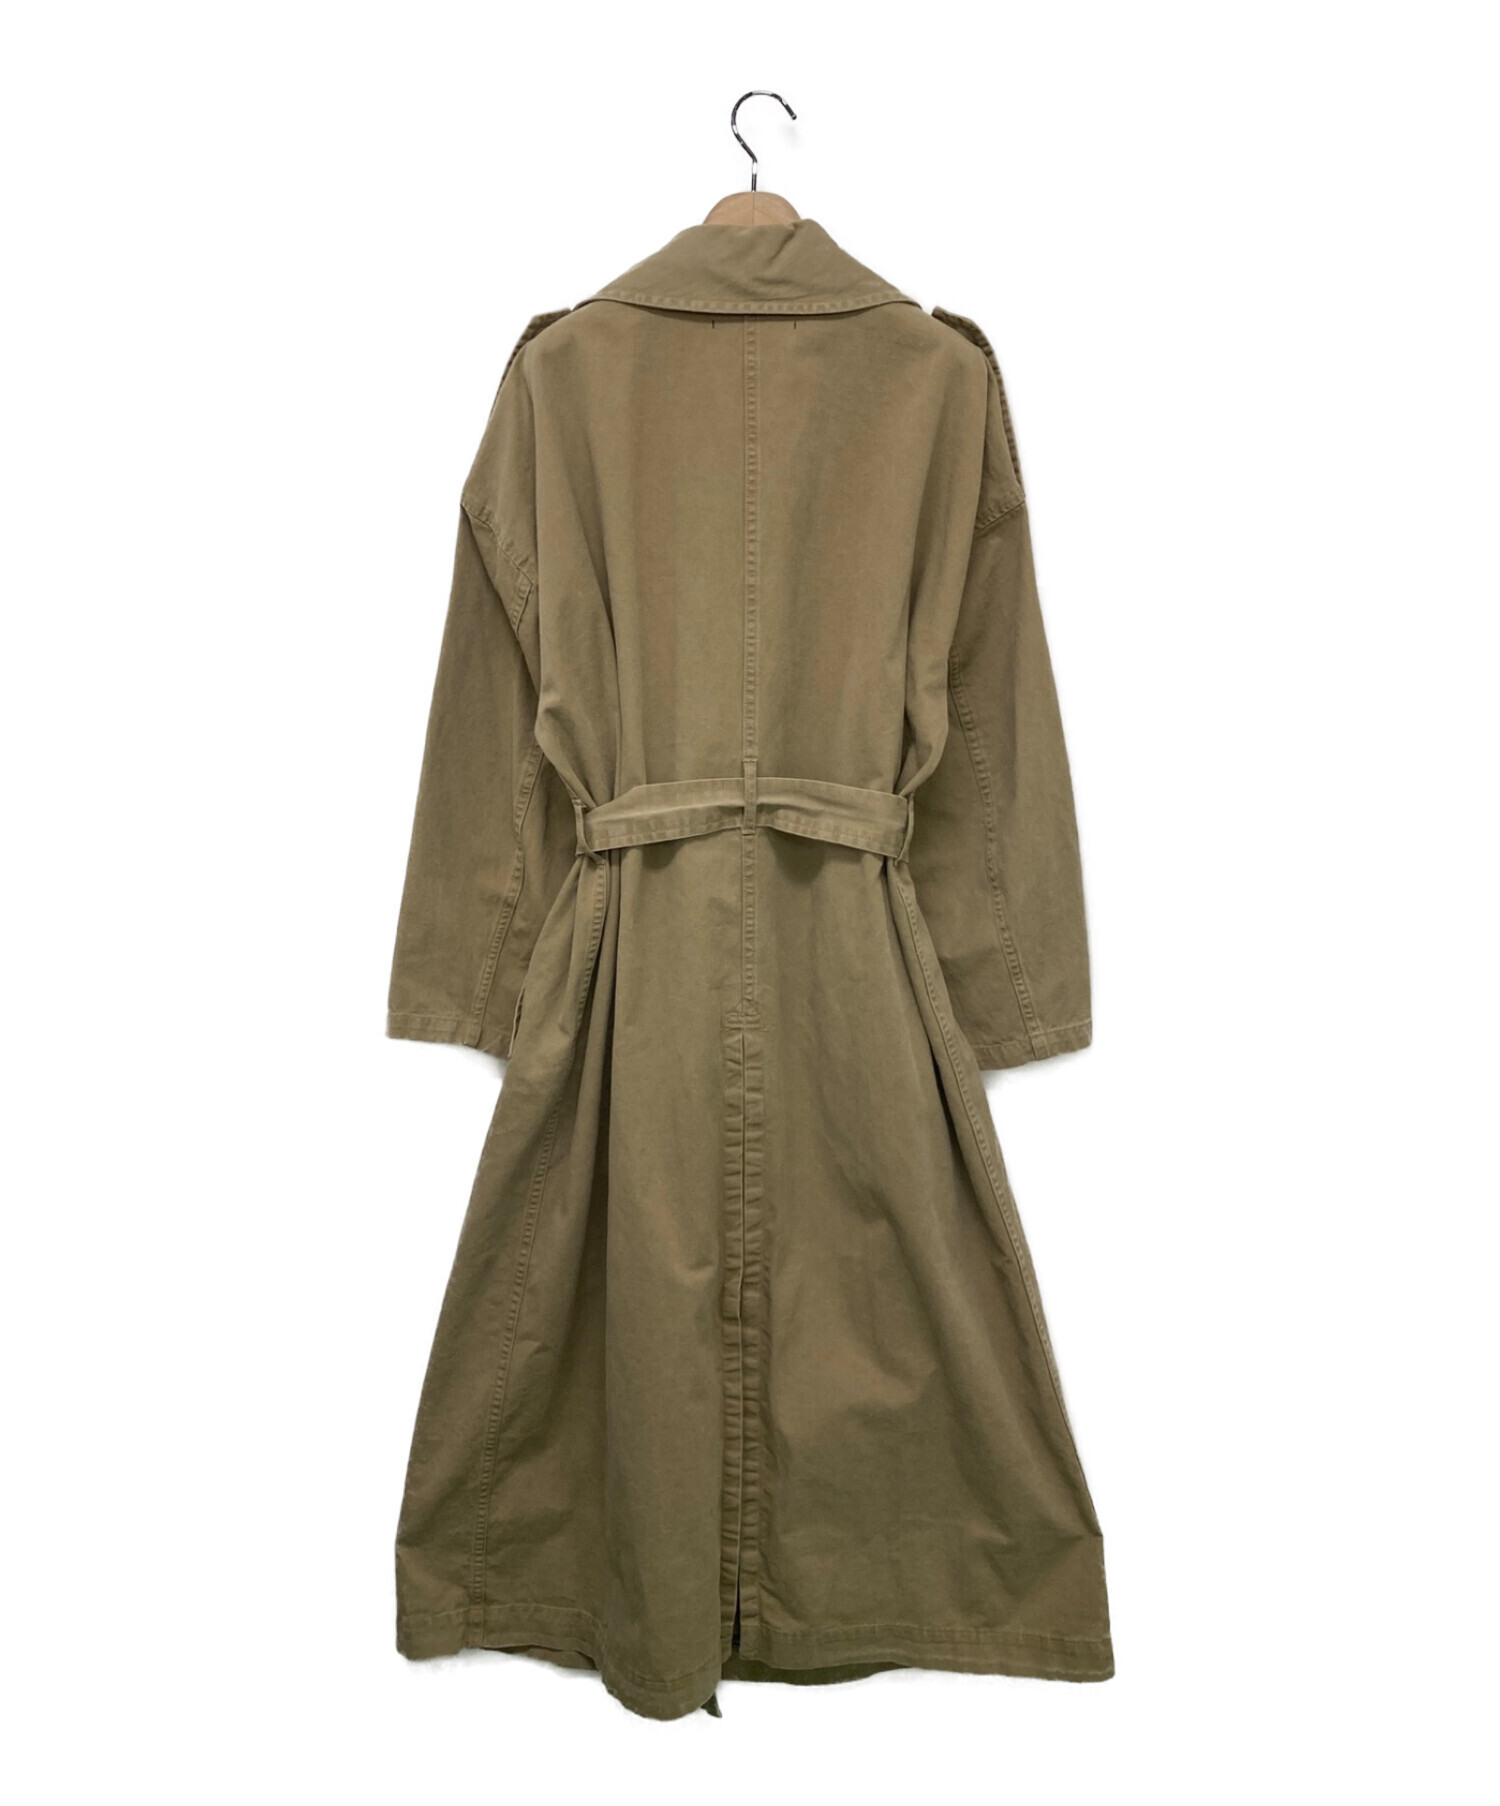 AP STUDIO (エーピーストゥディオ) Chino cloth Trench Coat ベージュ サイズ:-